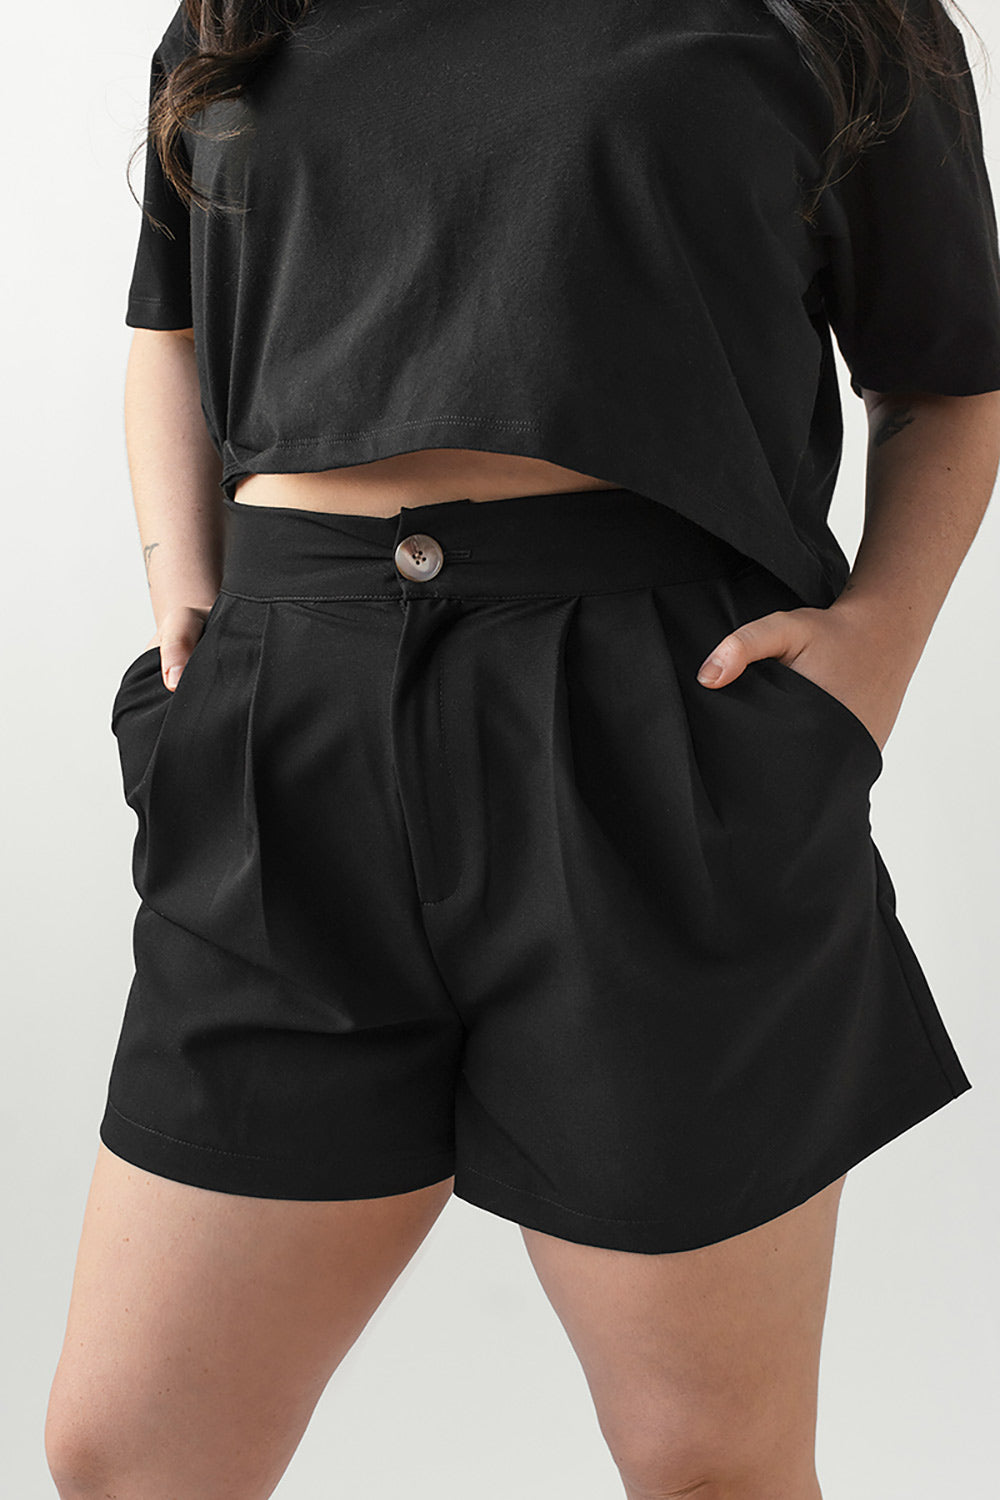 Nina Black | High-Waisted Shorts w/ Pleats